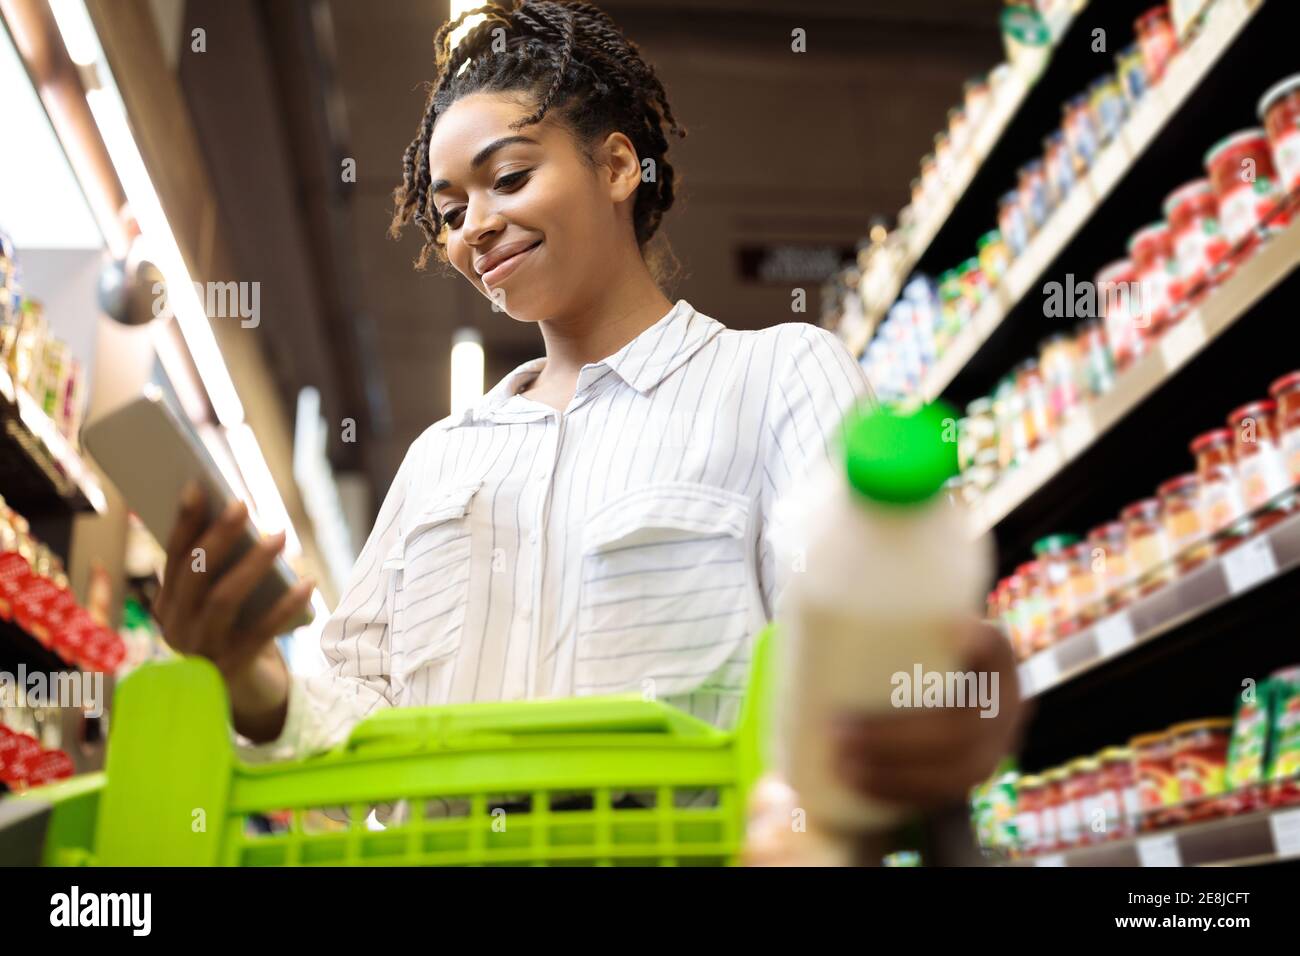 Femme afro-américaine utilisant des articles d'épicerie par téléphone dans un supermarché Banque D'Images